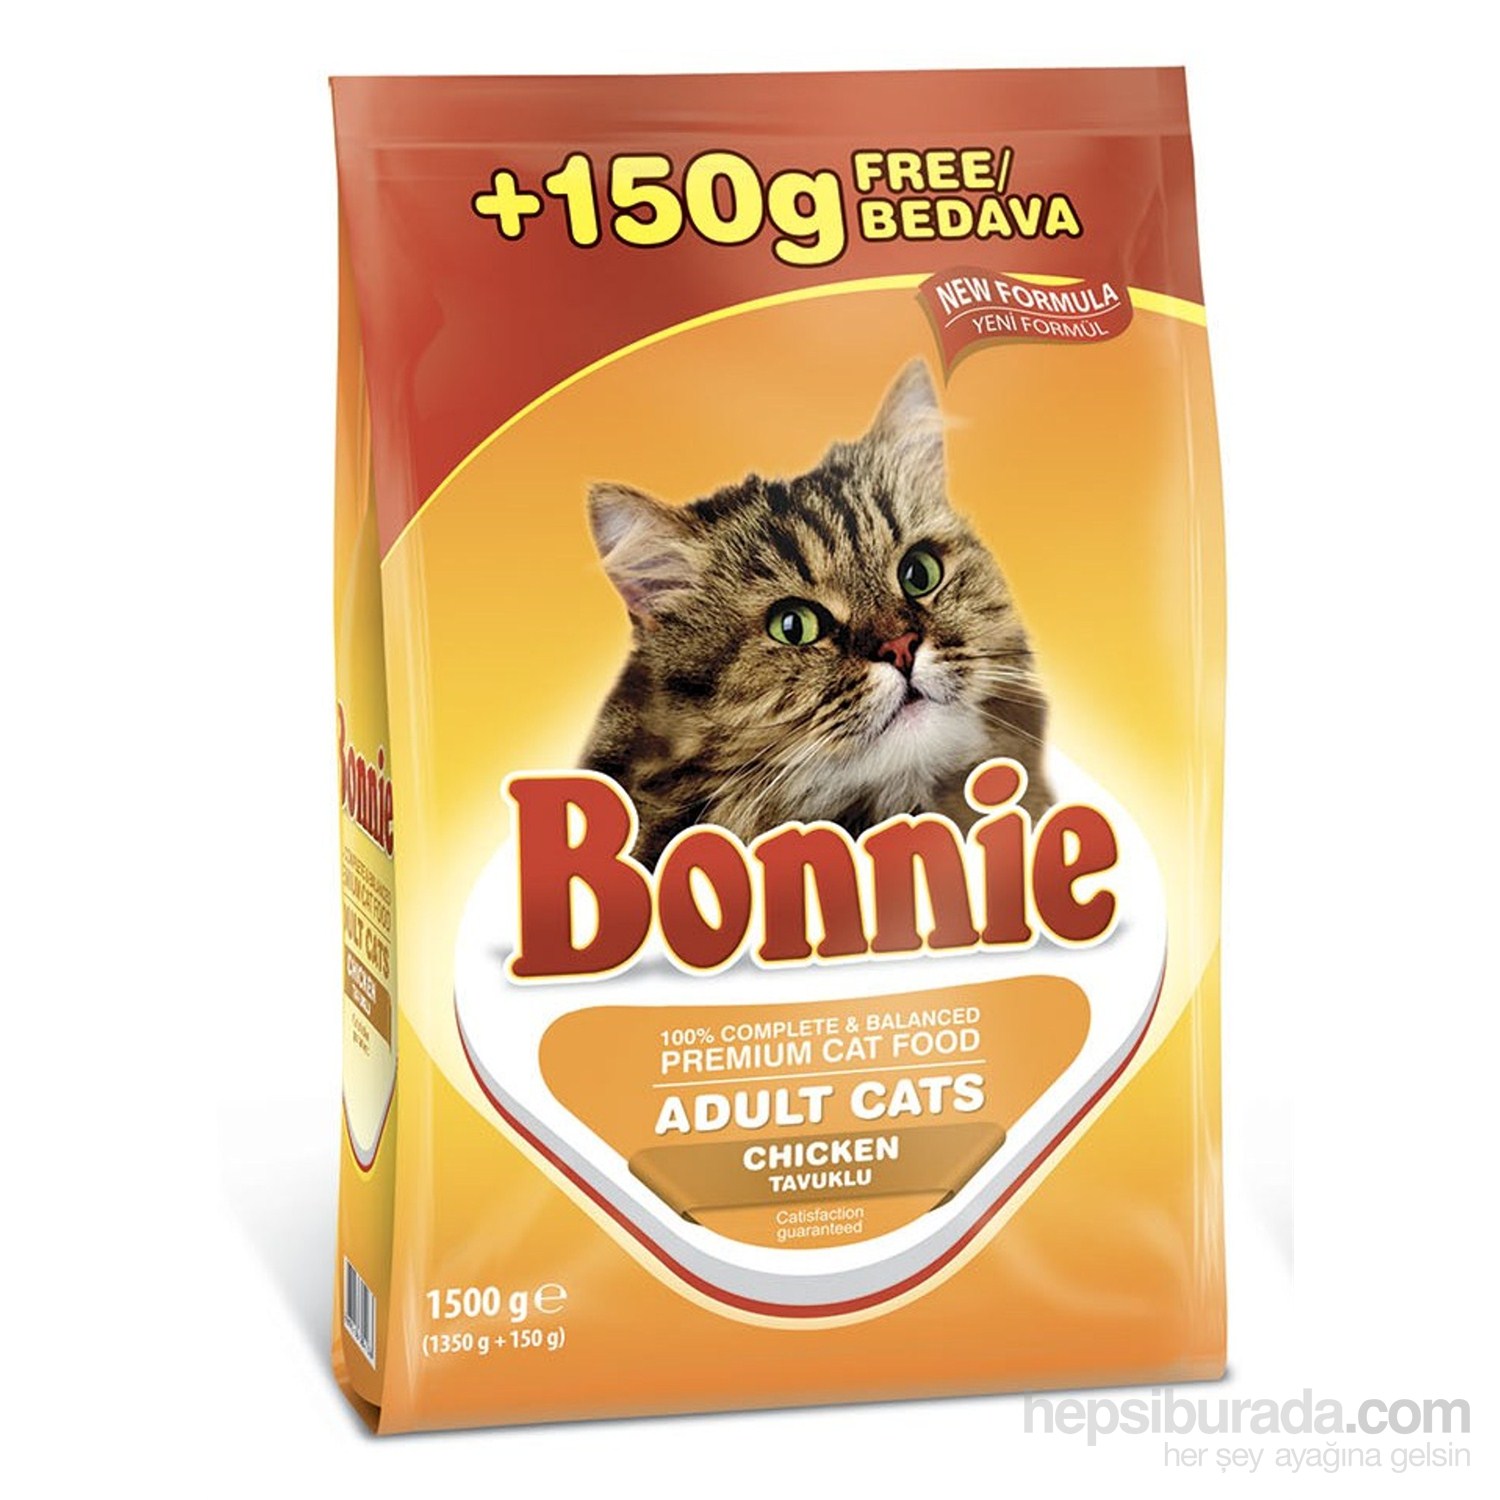 Bonnie Kedi Kuru Mama Tavuklu 1500gr Fiyatı Taksit Seçenekleri